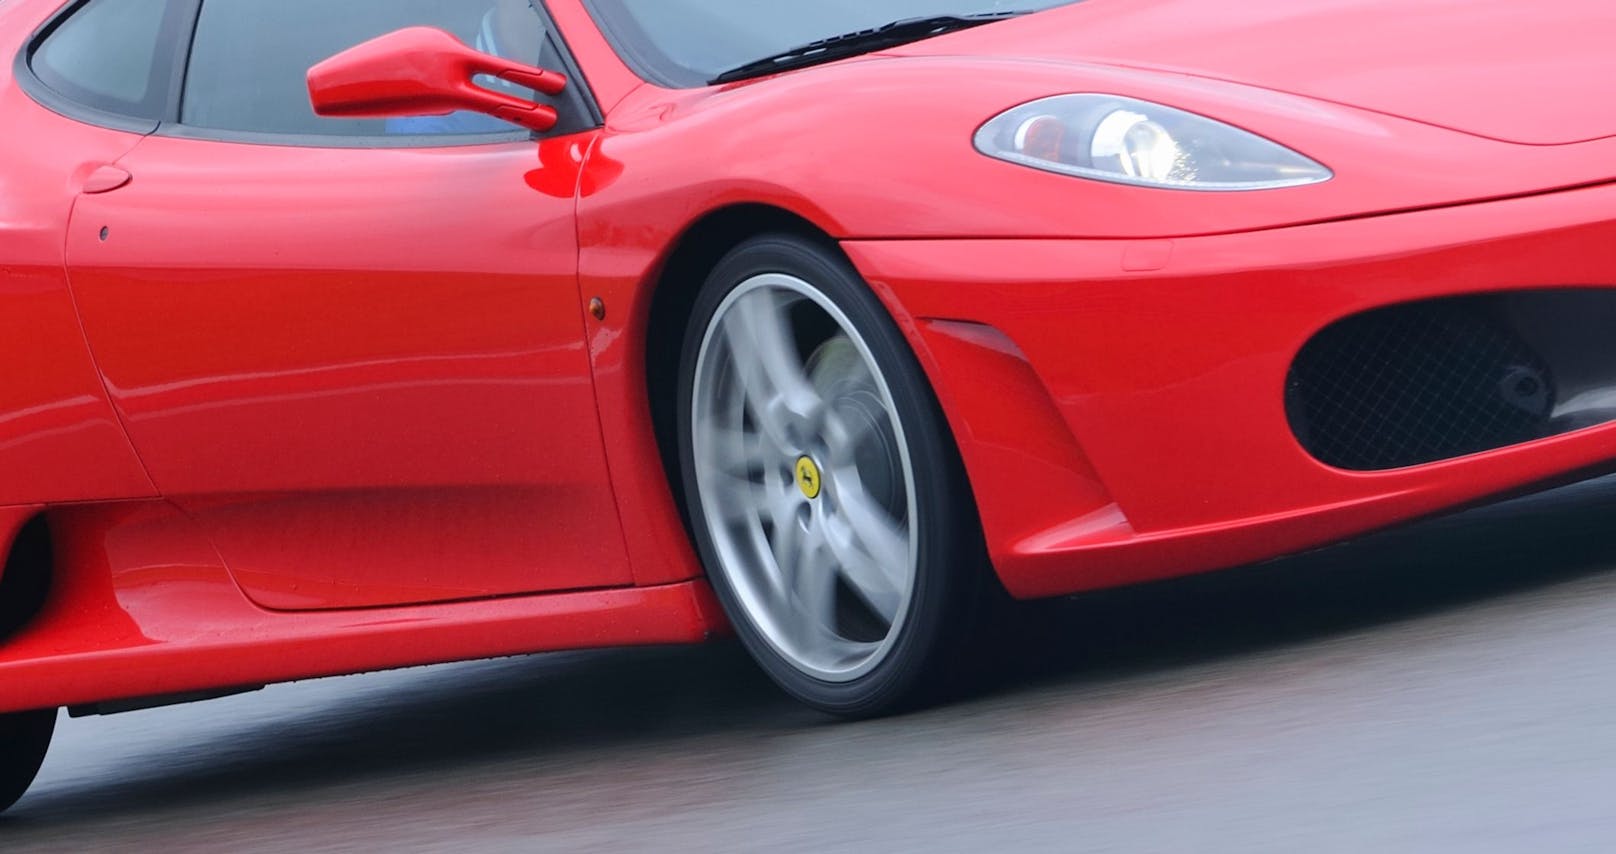 Frau schrottet teuren Ferrari, um ein Leben zu retten